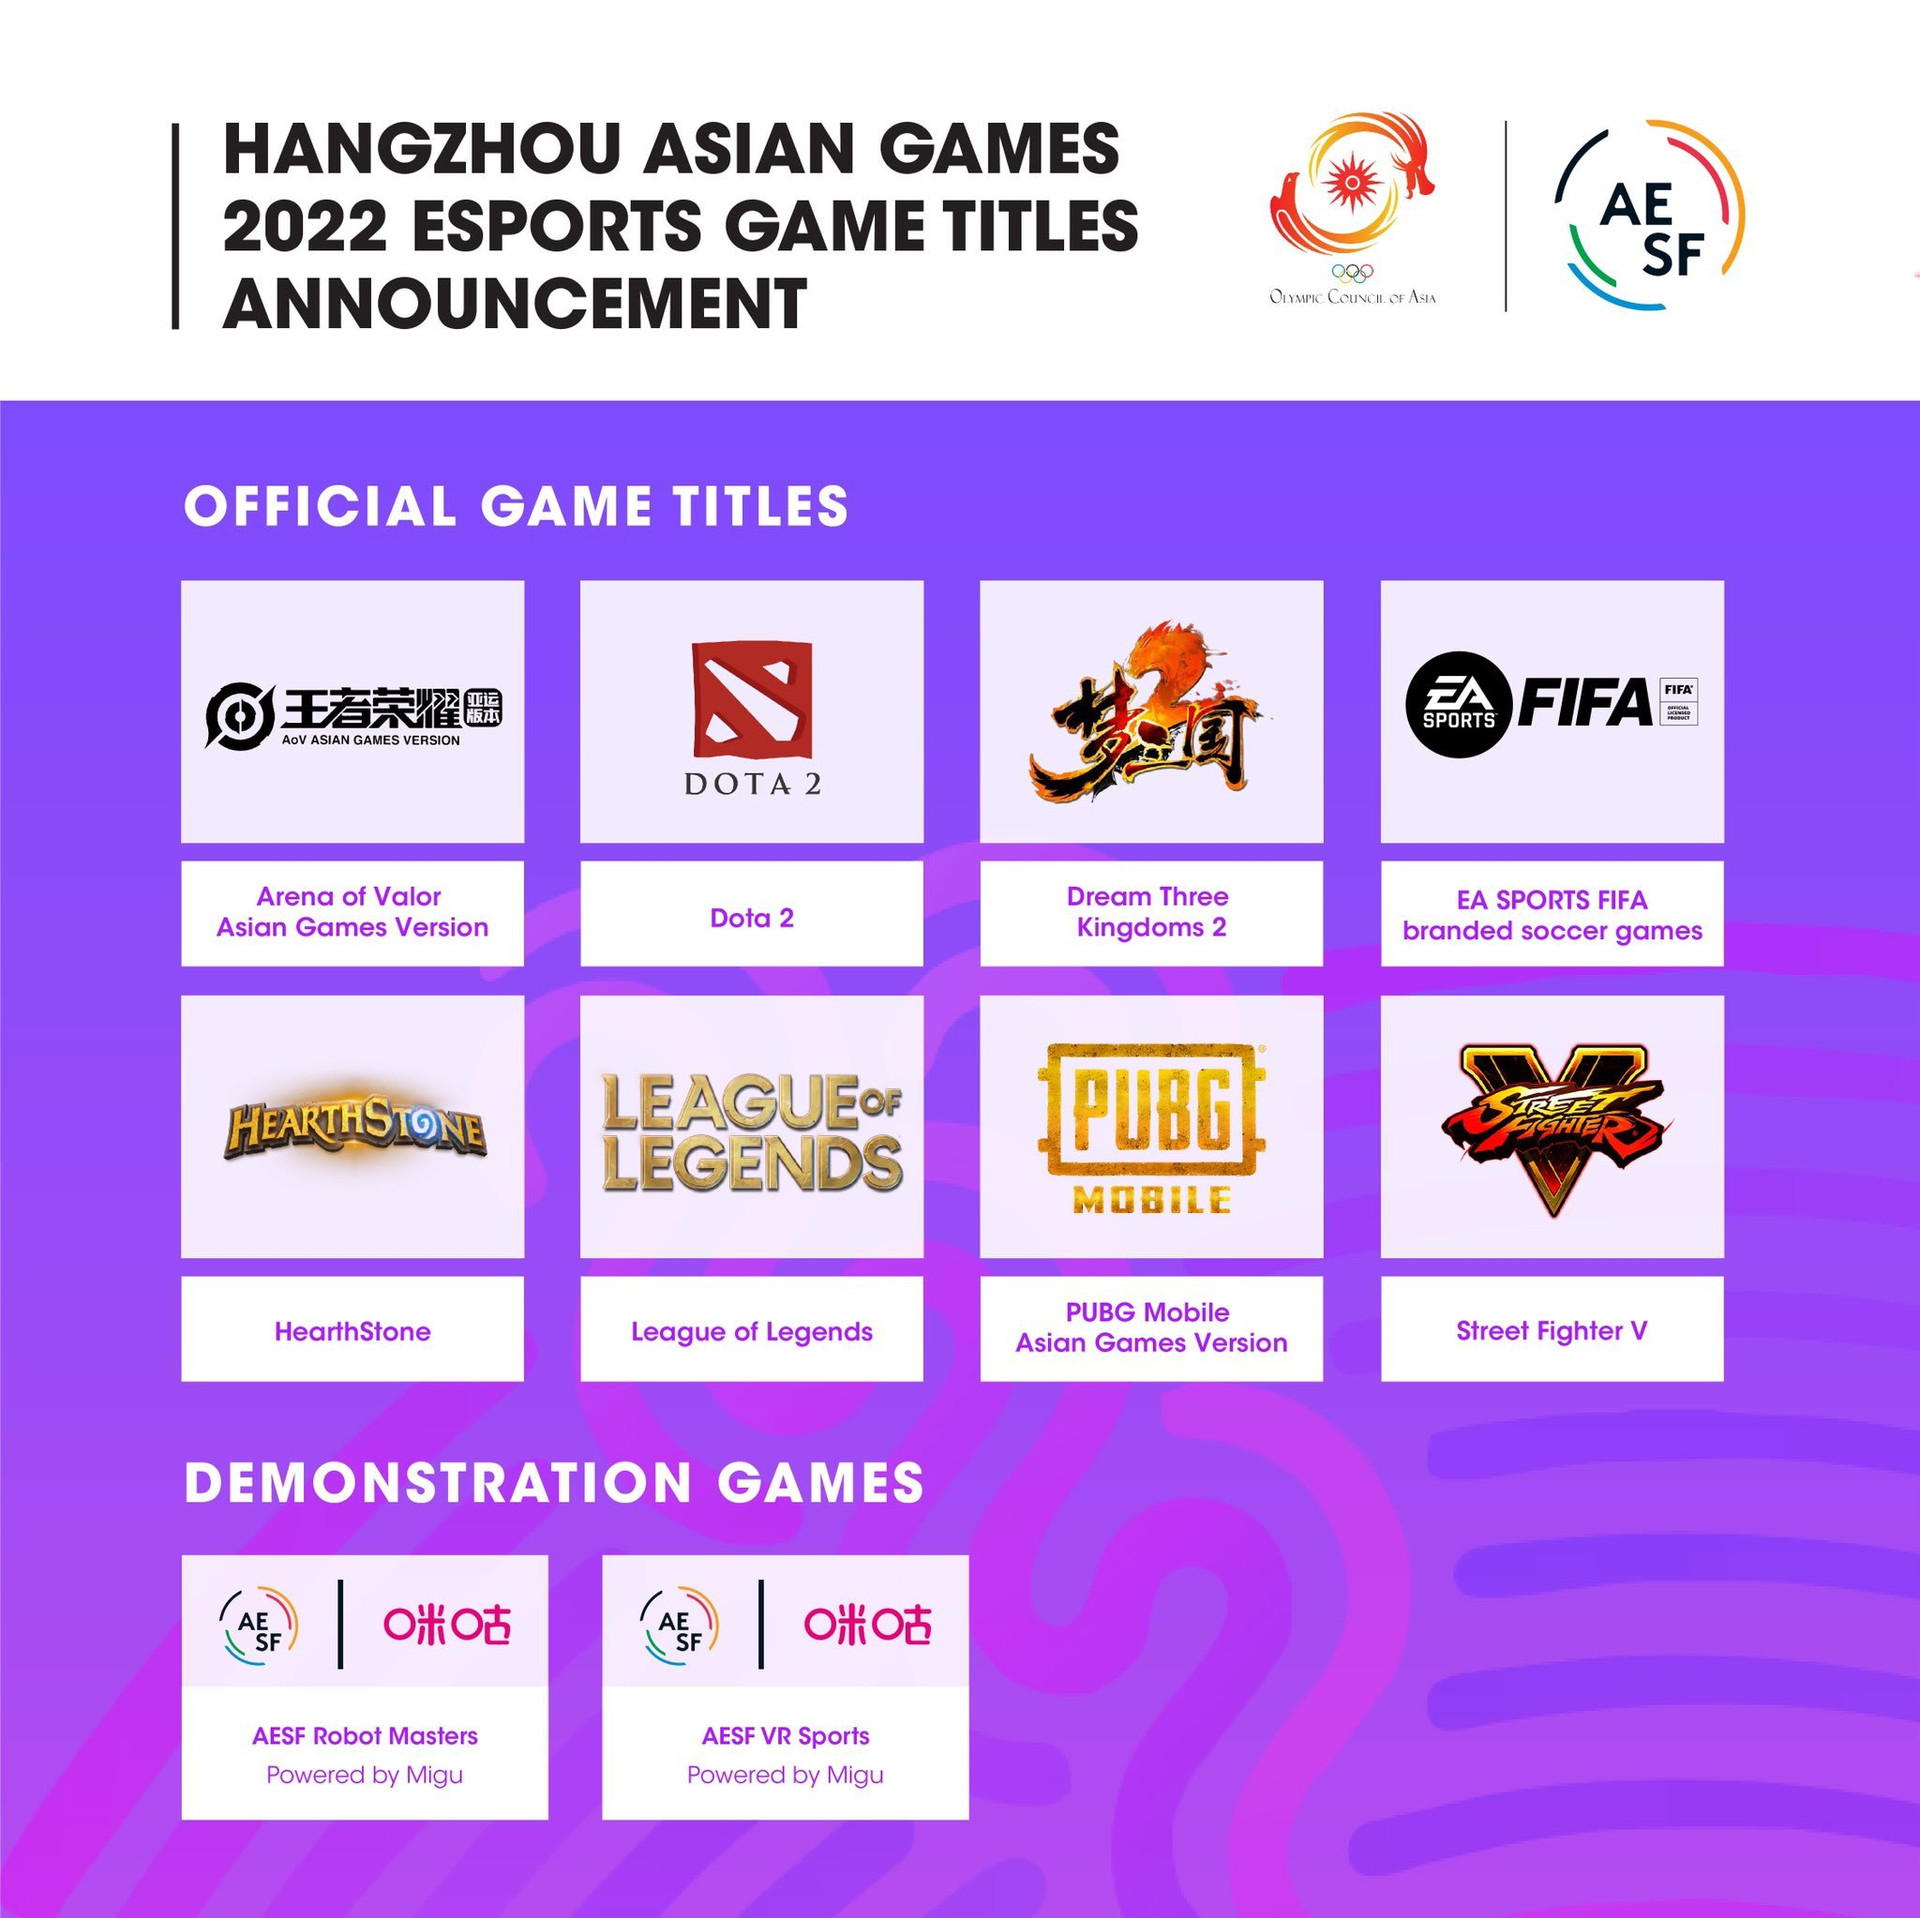 Esports lần đầu được đưa vào tranh huy chương ở Asian Games 2022